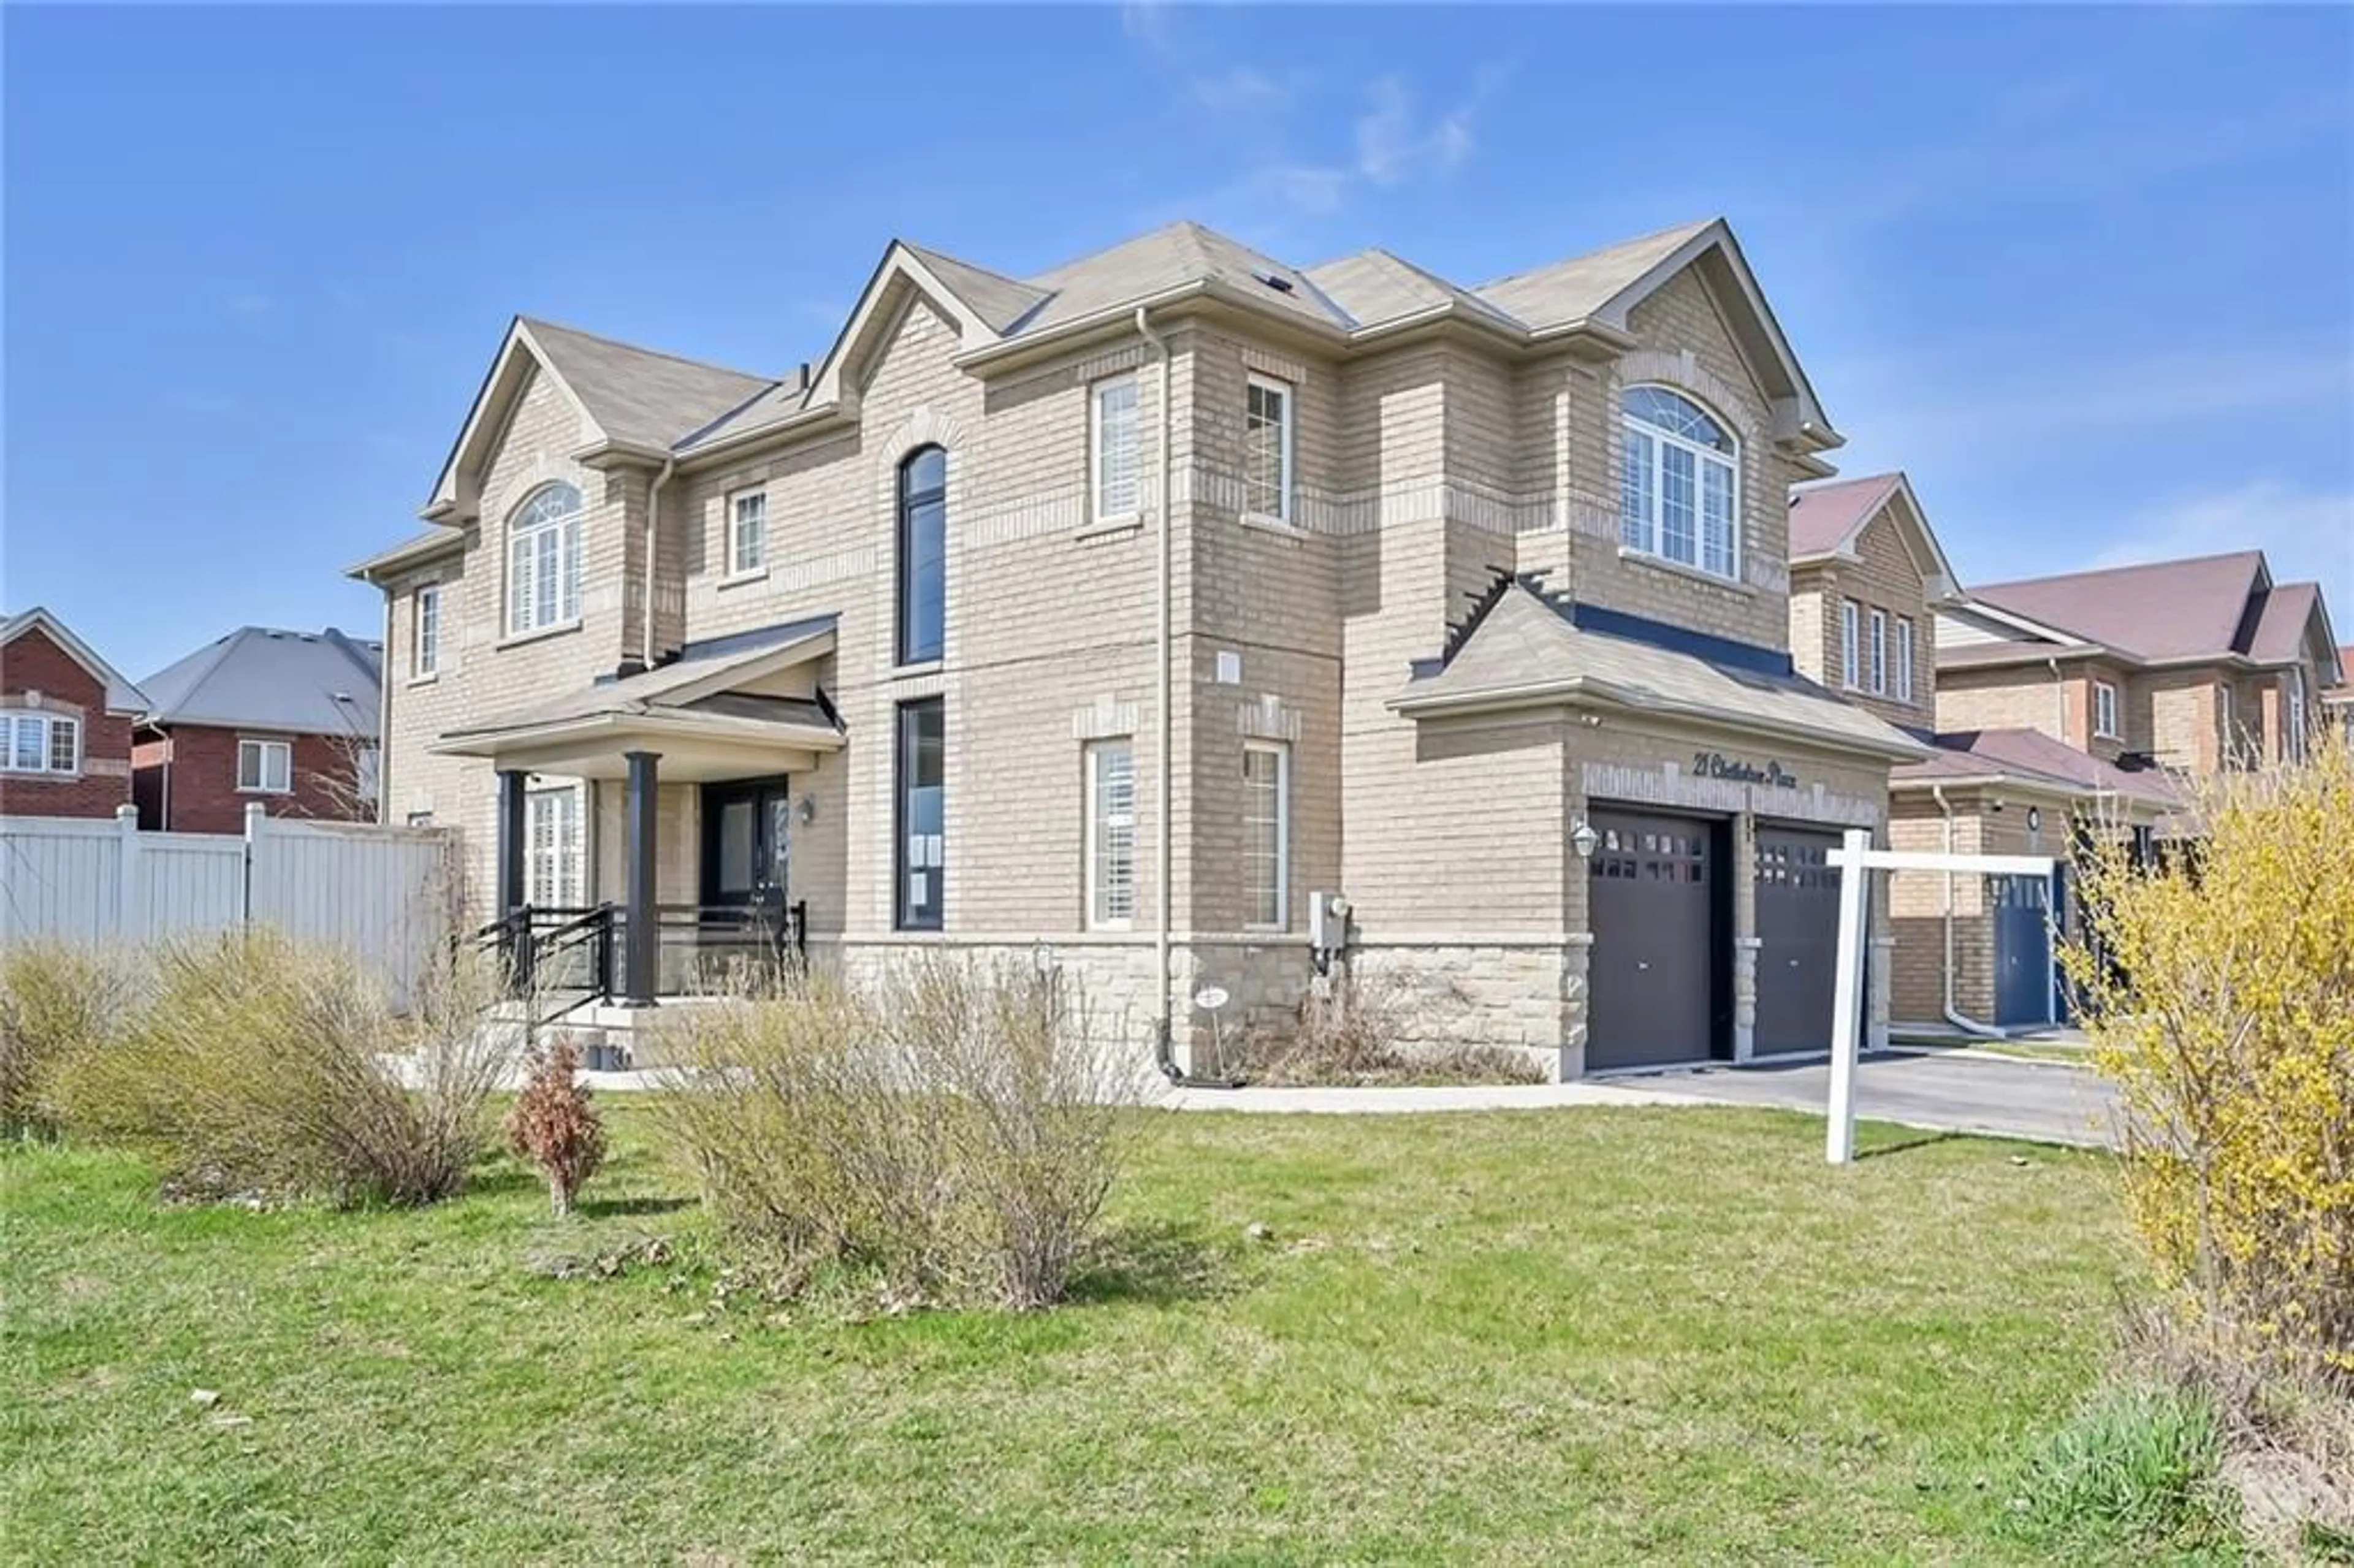 Home with brick exterior material for 21 Chetholme Pl, Halton Hills Ontario L7G 0E1